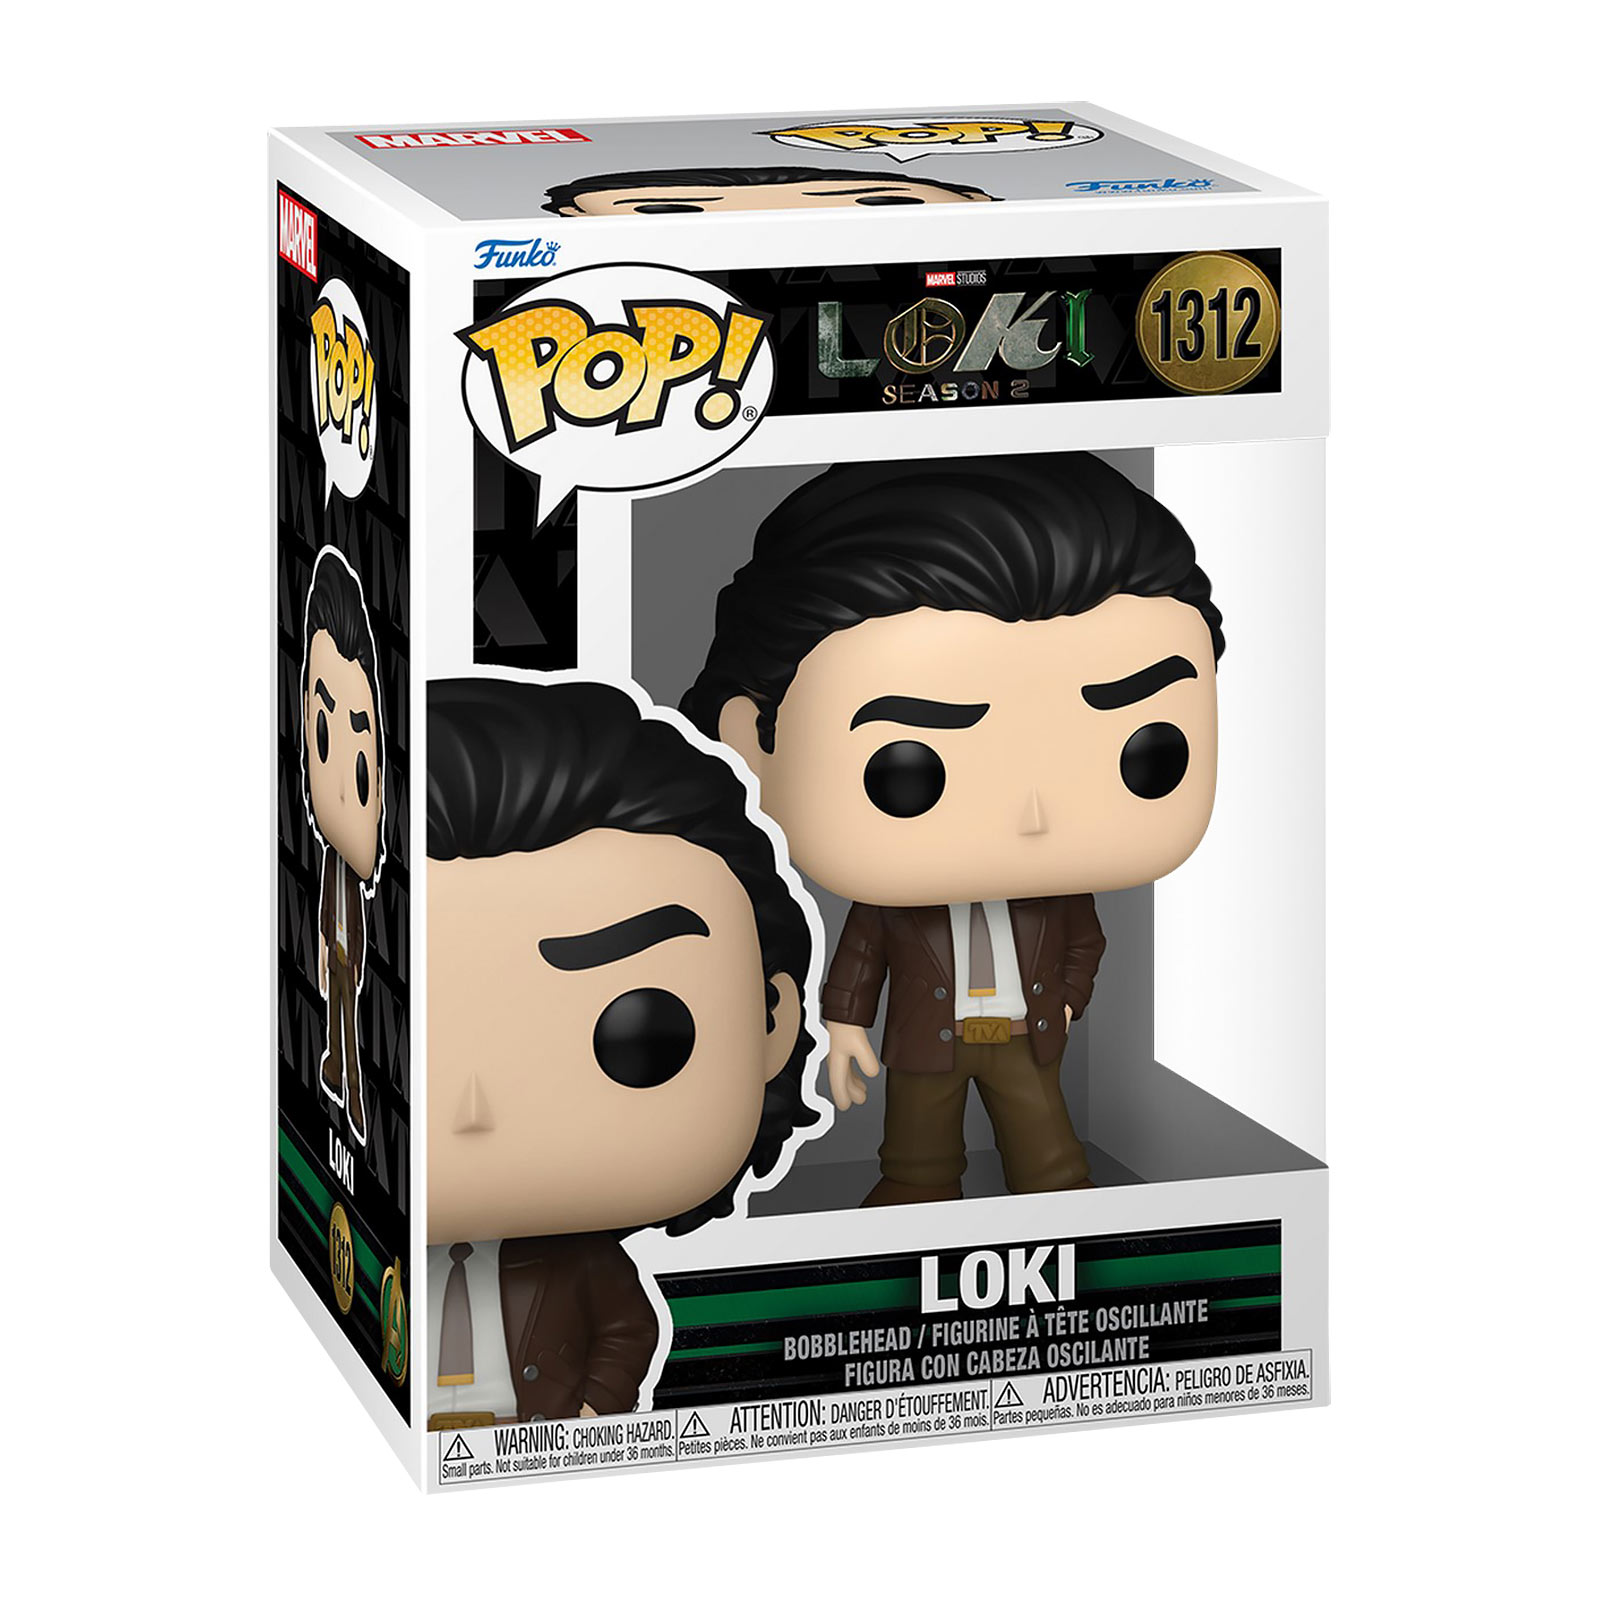 Loki Season 2 Funko Pop Bobblehead Figure